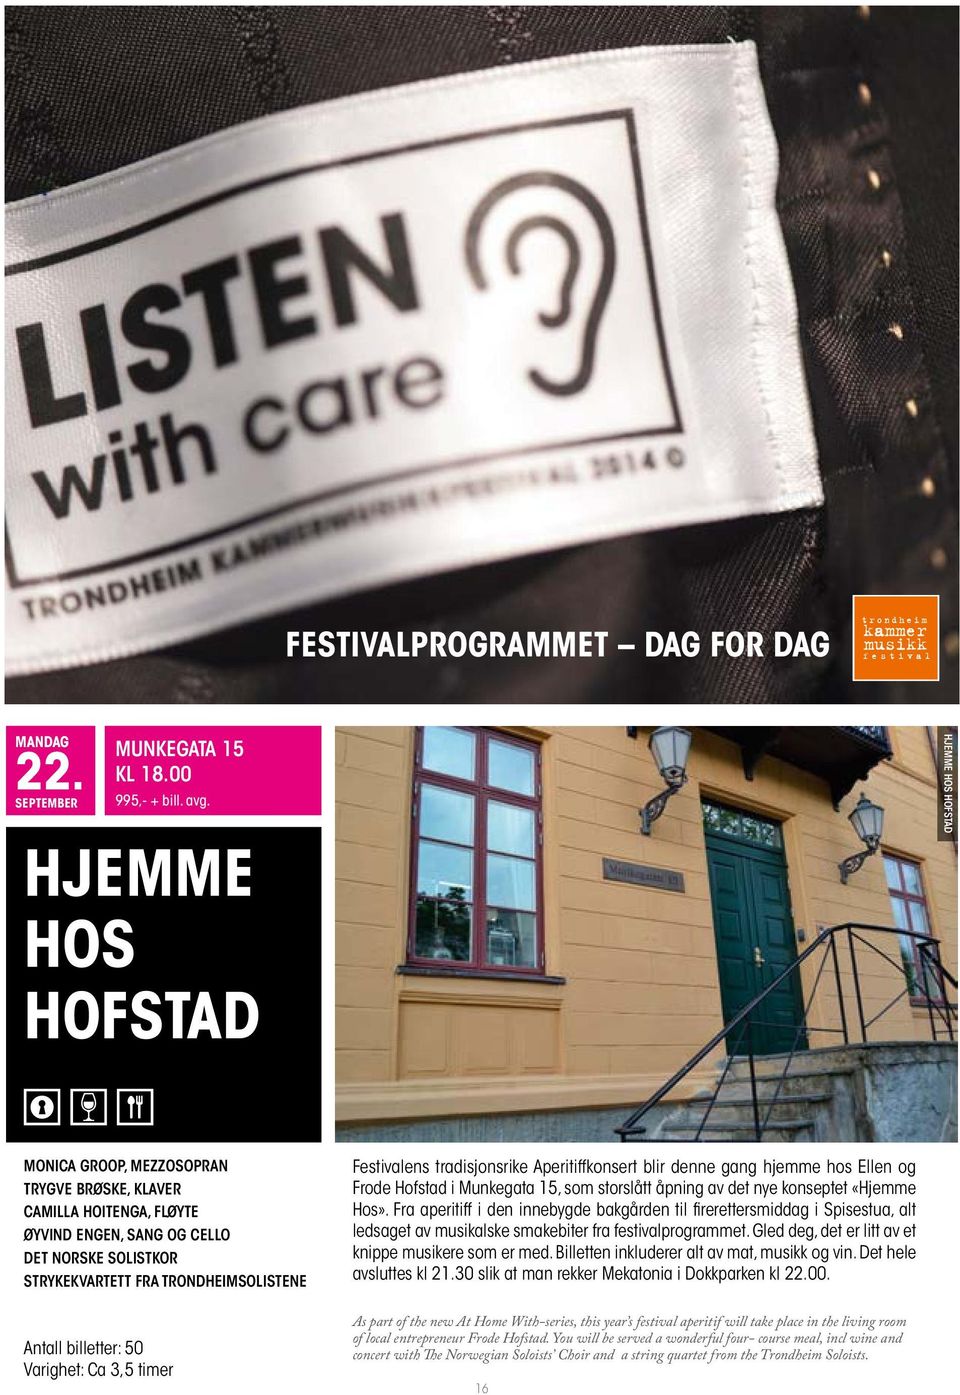 Festivalens tradisjonsrike Aperitiffkonsert blir denne gang hjemme hos Ellen og Frode Hofstad i Munkegata 15, som storslått åpning av det nye konseptet «Hjemme Hos».